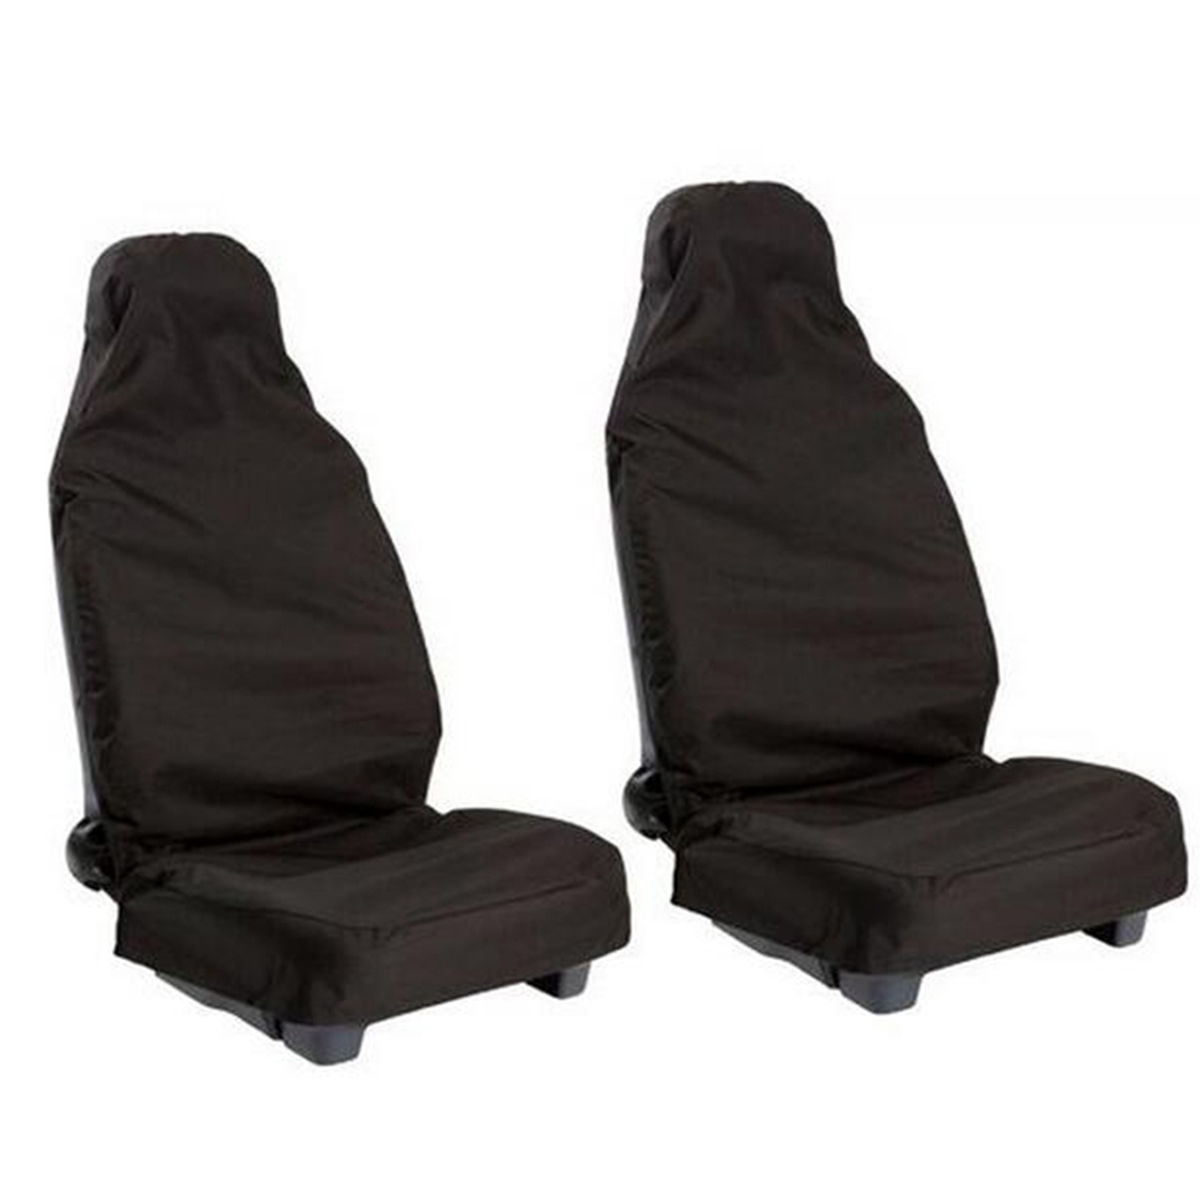 2 Stuks Voor Universele Waterdichte Nylon Auto Van Vehicle Seat Cover Protector (Zwart)